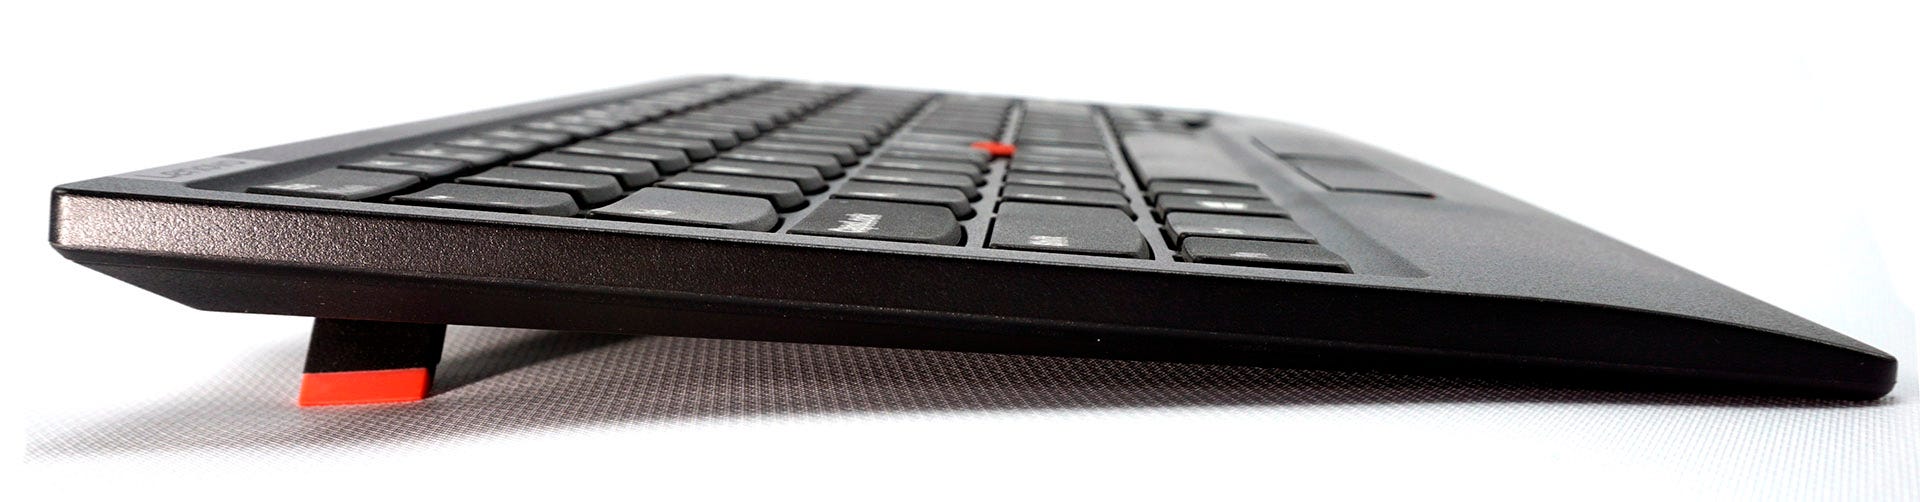 ThinkPad-tangentbord från vänster sida 